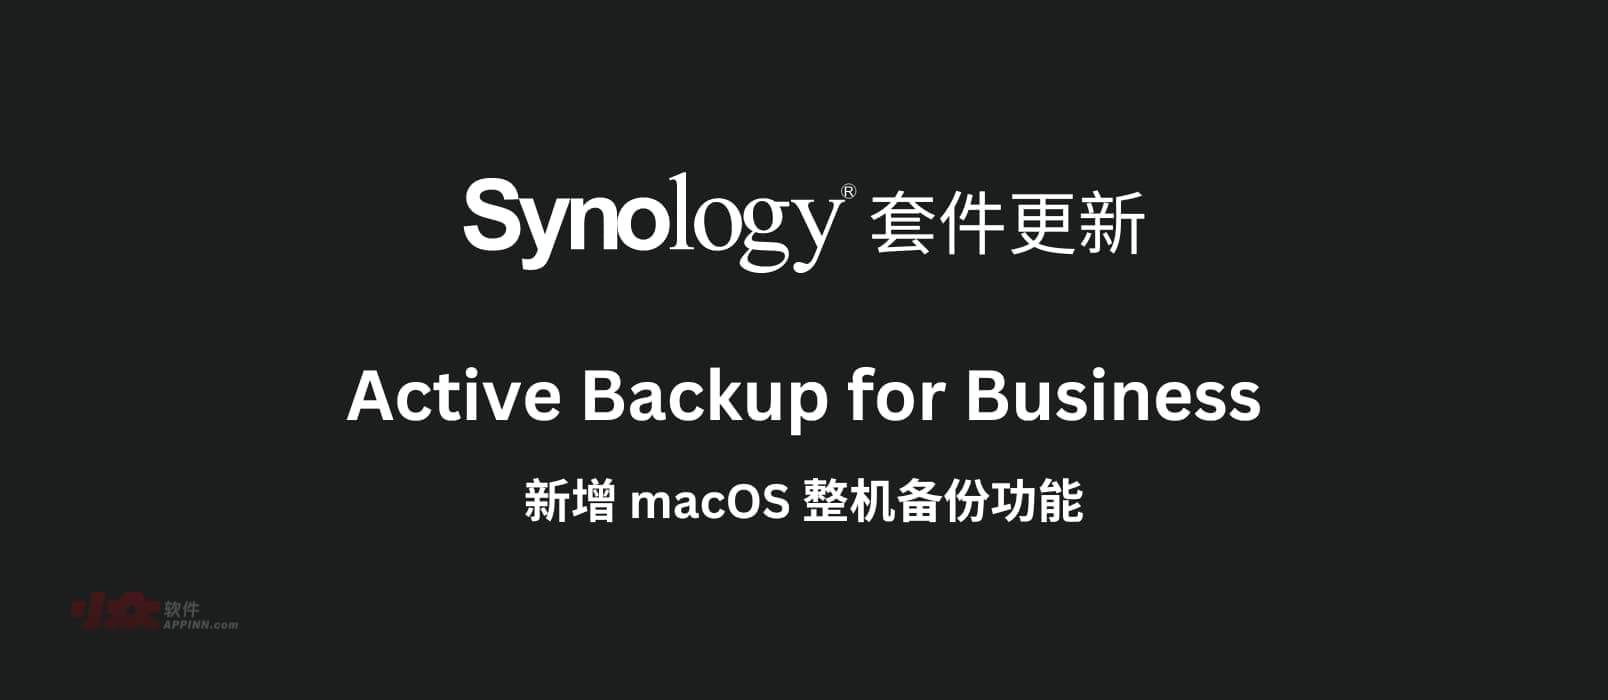 群晖 Active Backup for Business 套件新增 macOS 整机备份功能，目前已支持个人电脑、物理服务器、文件服务器、虚拟机备份